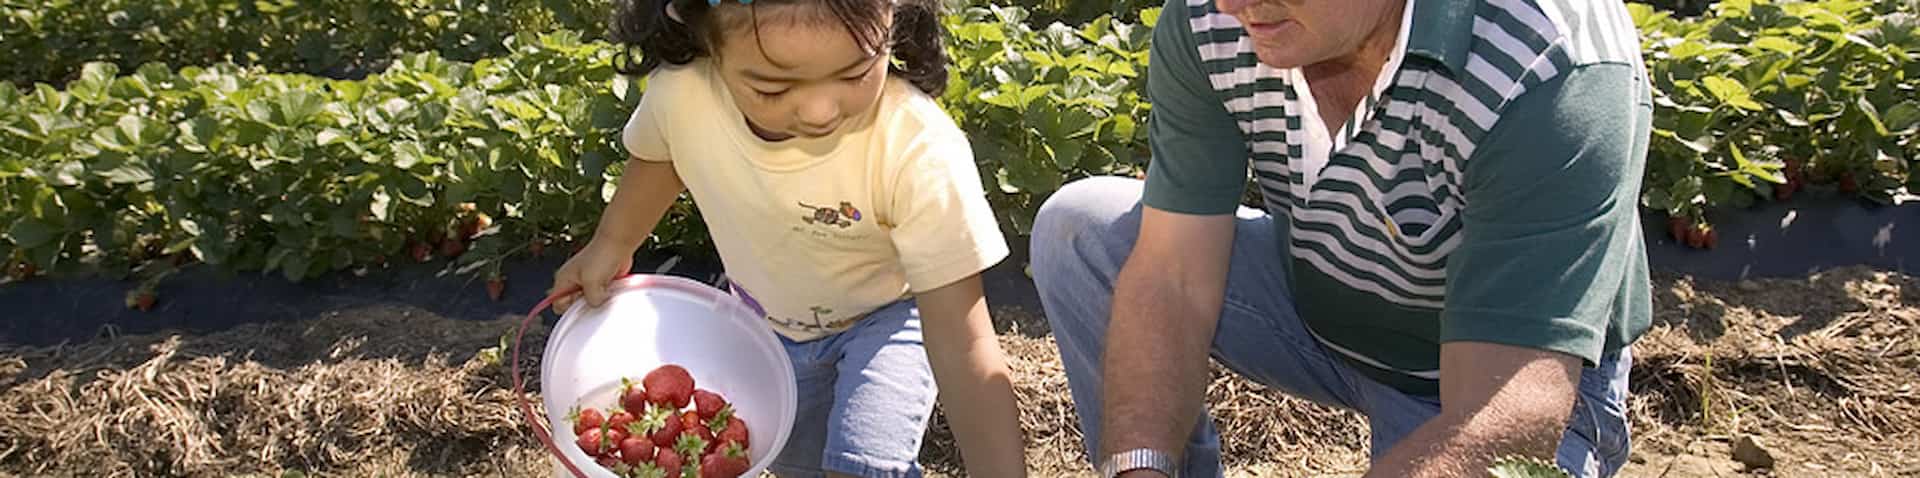 kid picking berries 